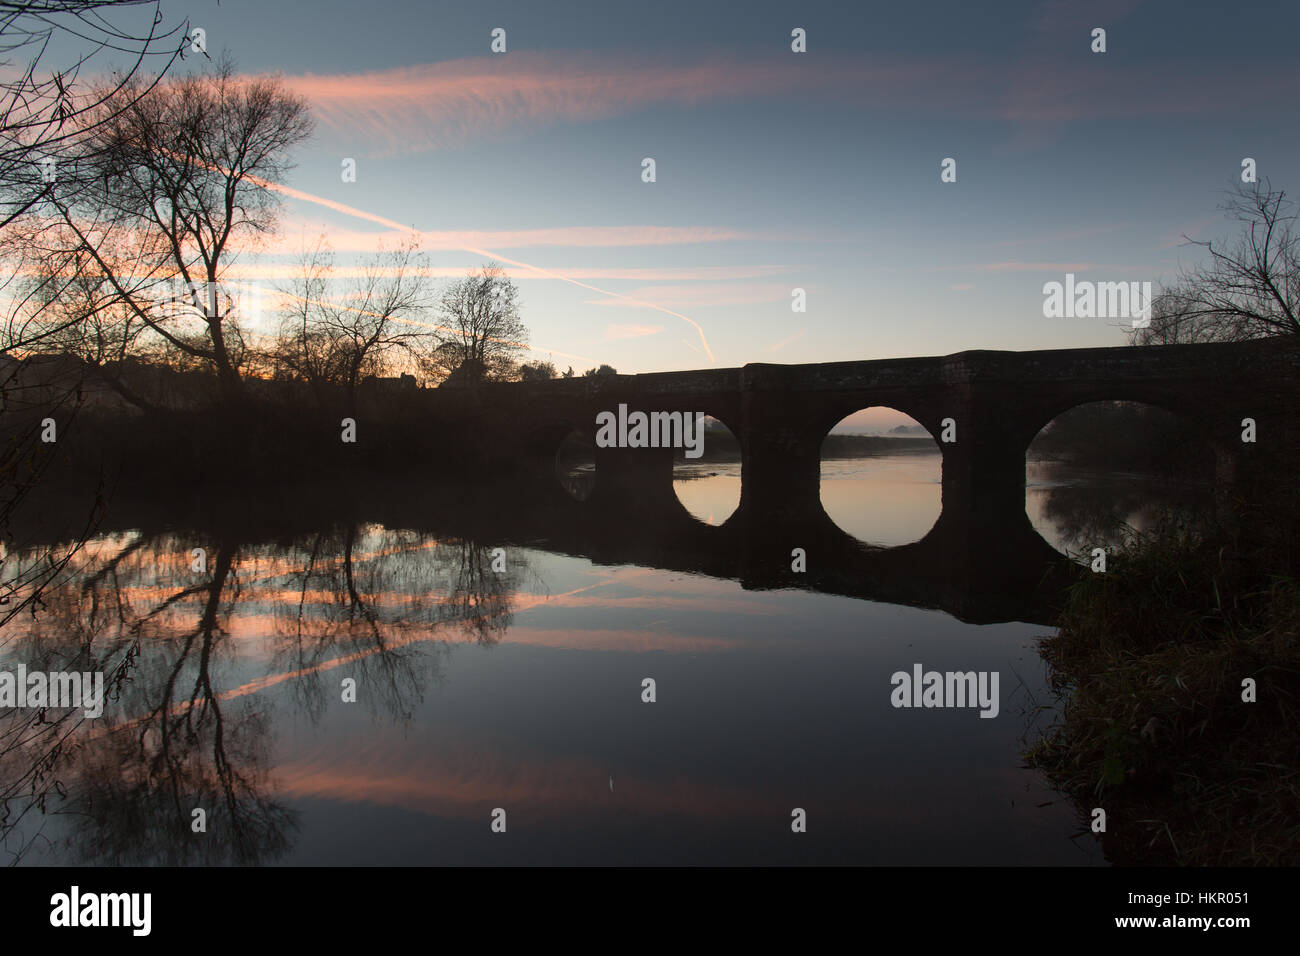 Hespérie de village, en Angleterre. Vue du coucher de soleil pittoresque du 14ème siècle figurant 1 e année Holt médiévale Pont sur la rivière Dee. Banque D'Images